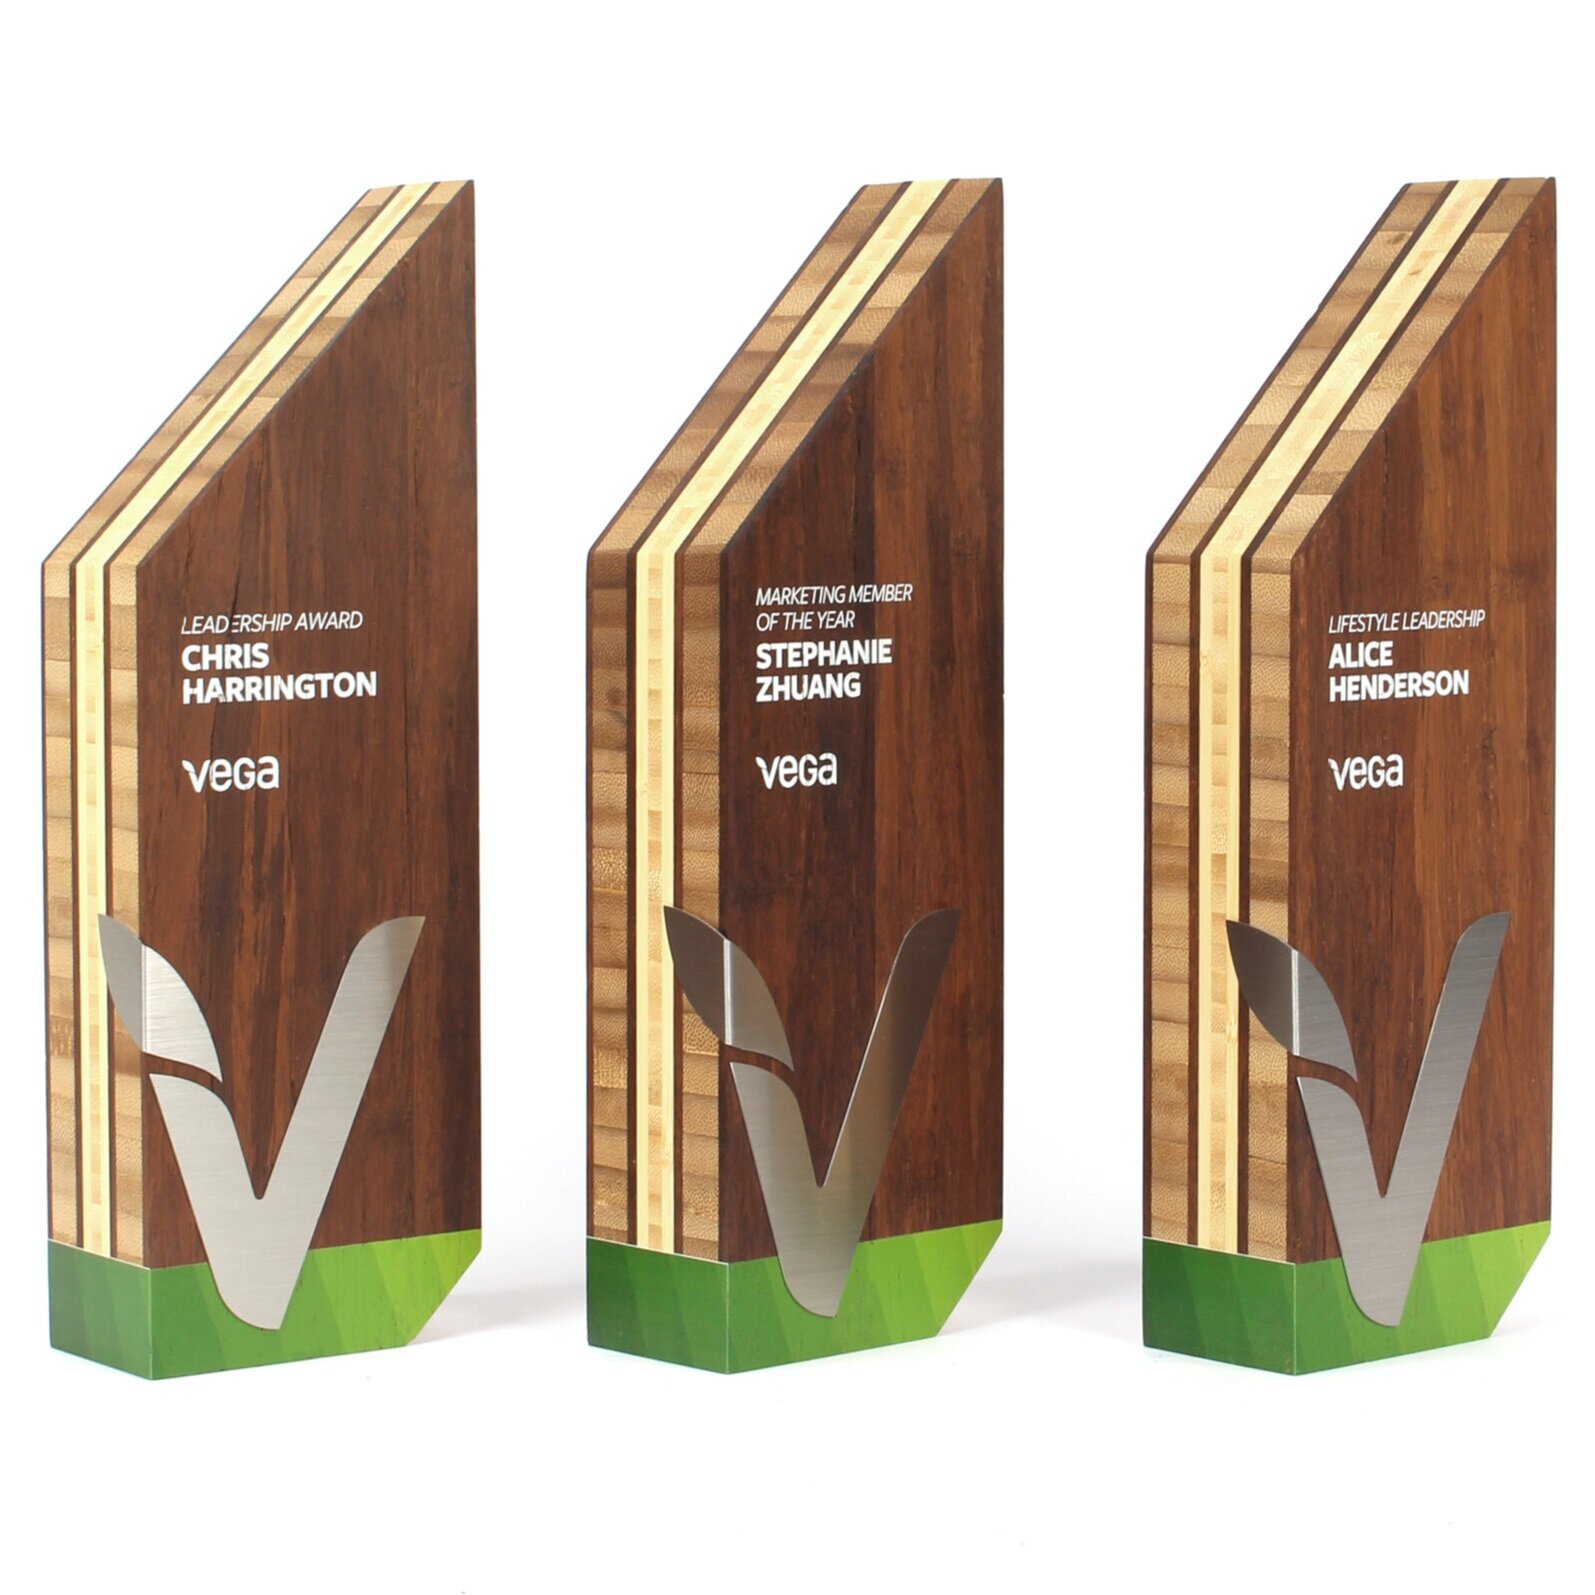 vega eco friendly awards bamboo sustainable wood 